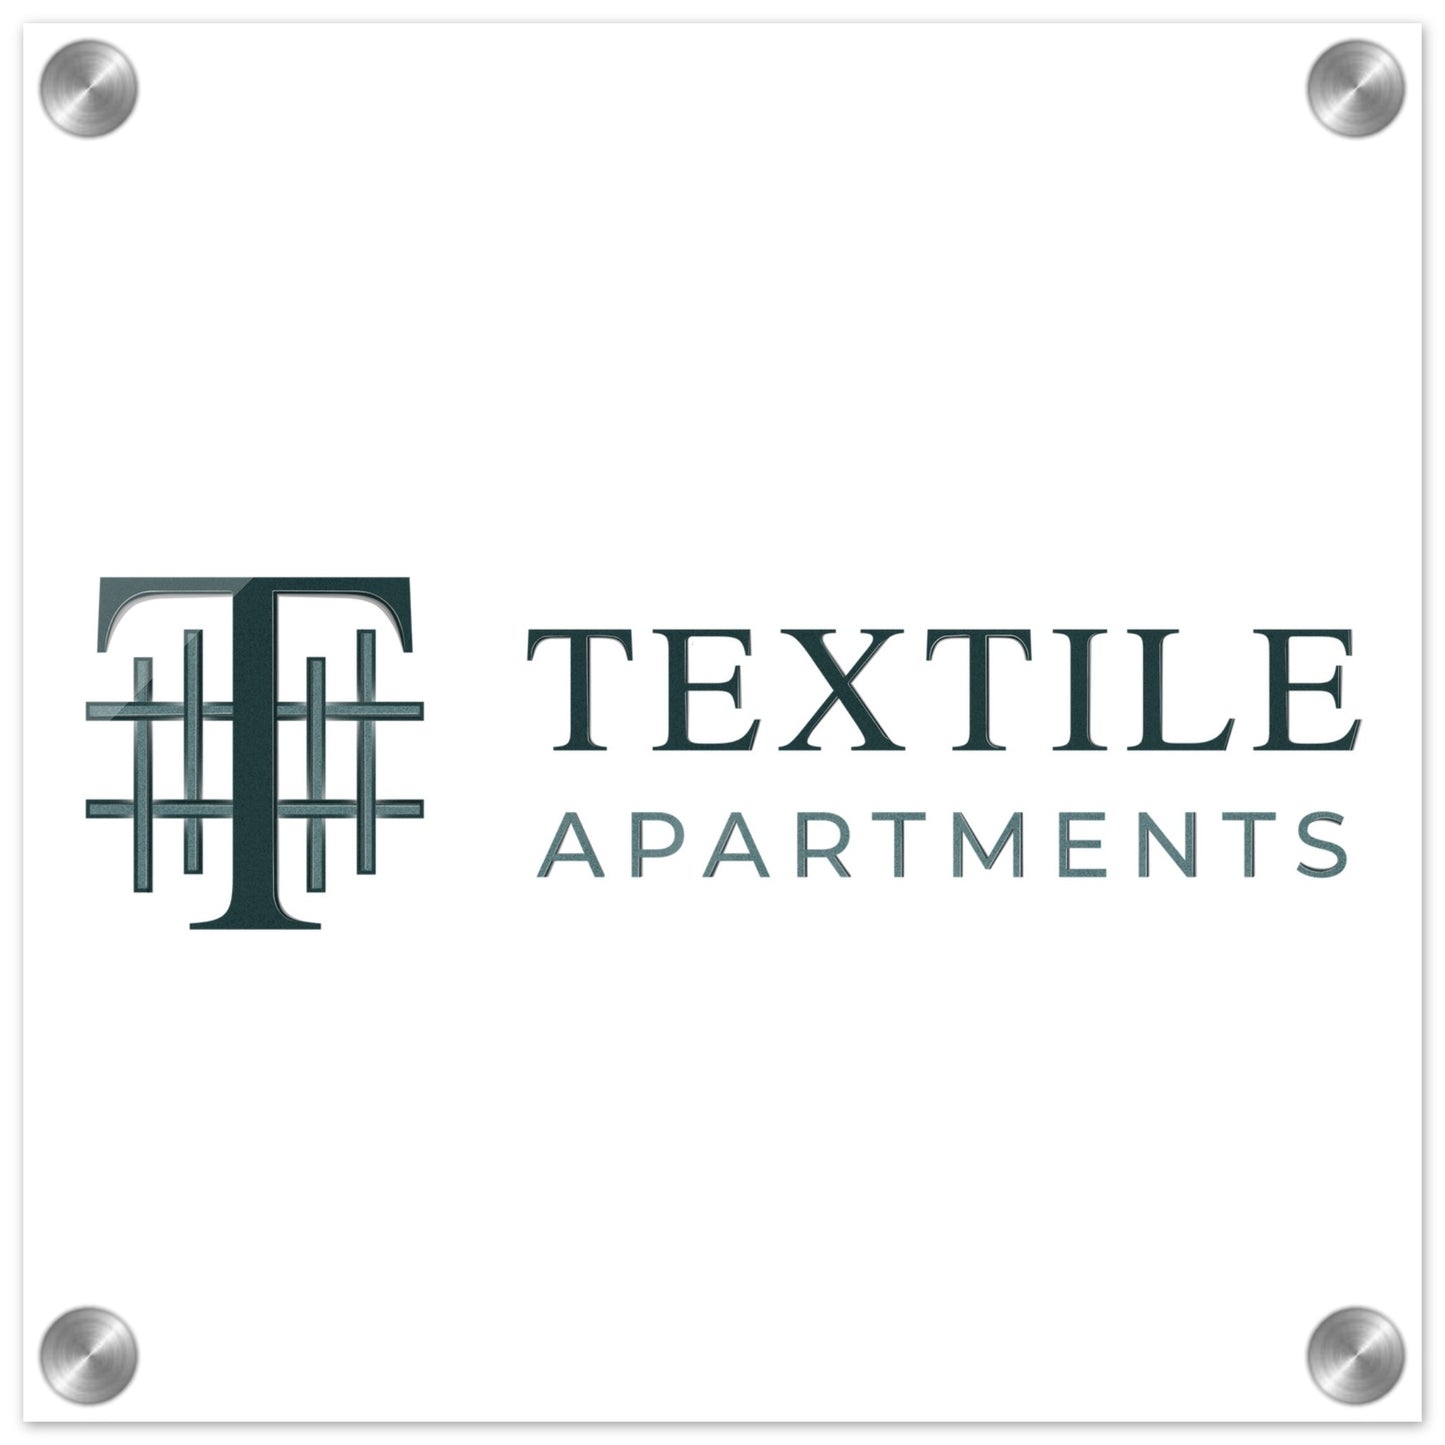 Textile Apartments - Acrylic Print